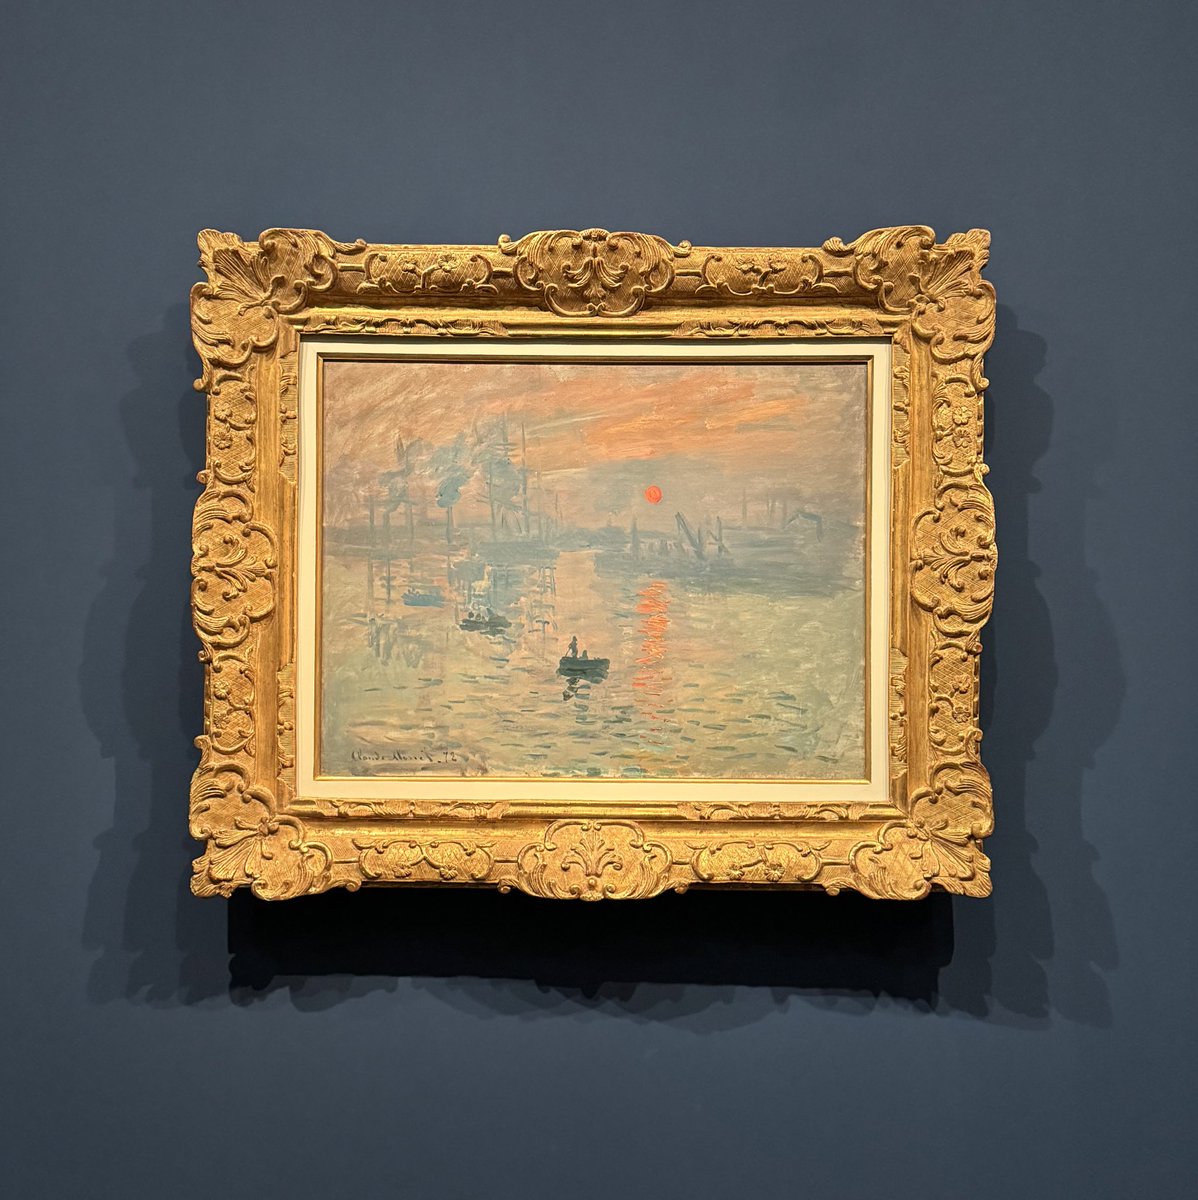 Il y a 150 ans aujourd’hui s’ouvrait à Paris une exposition dans laquelle un tableau s’apprêtait à donner son nom à un mouvement artistique majeur. « Impression, soleil levant », Claude Monet (1872) - musée Marmottan Monet @AcadBeauxarts.